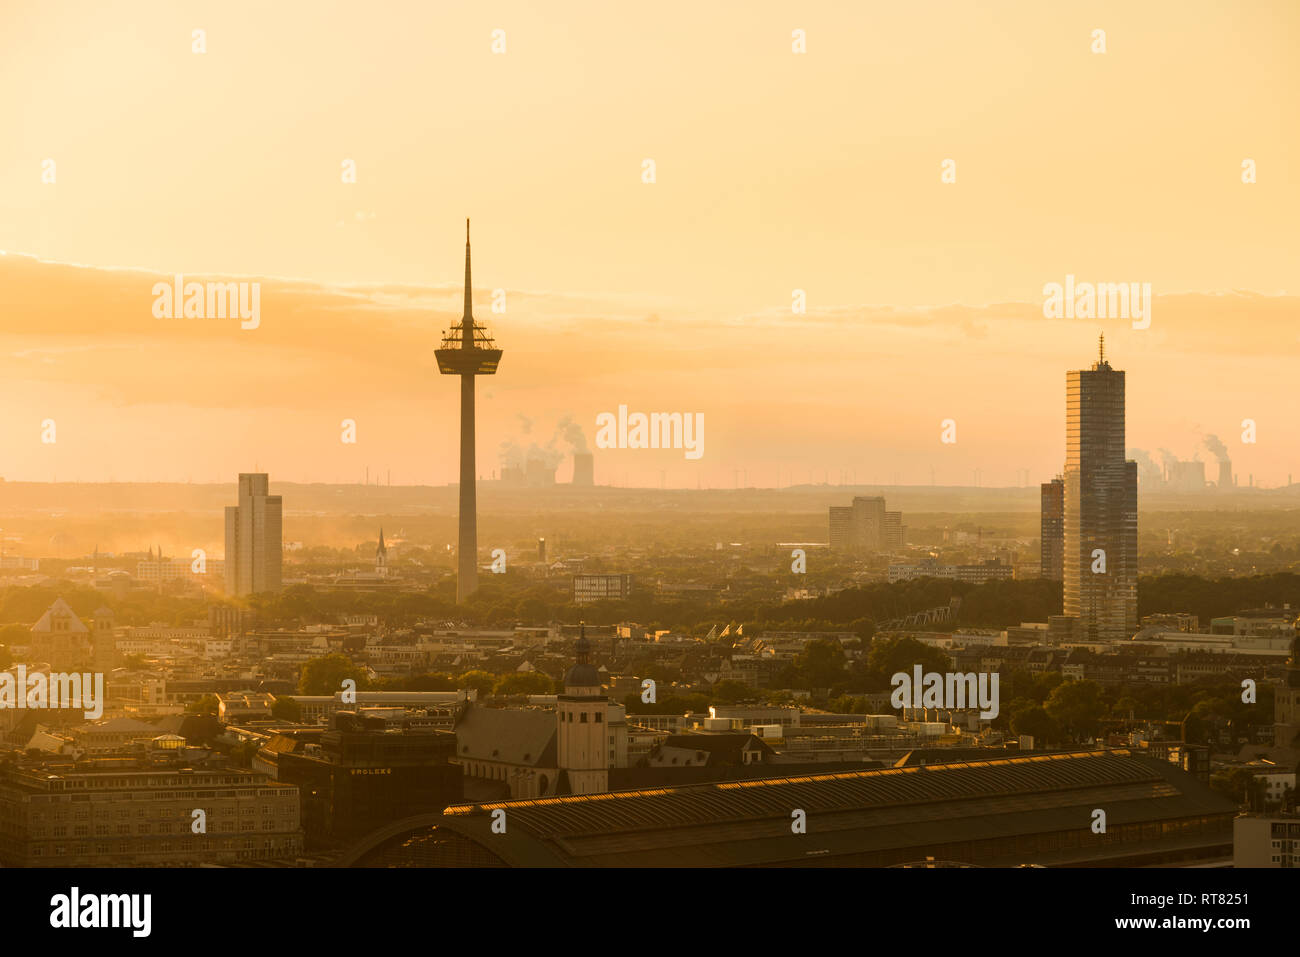 Alemania, Colonia, silueta de Uni-Center, torre de televisión y Torre de Colonia al amanecer Foto de stock